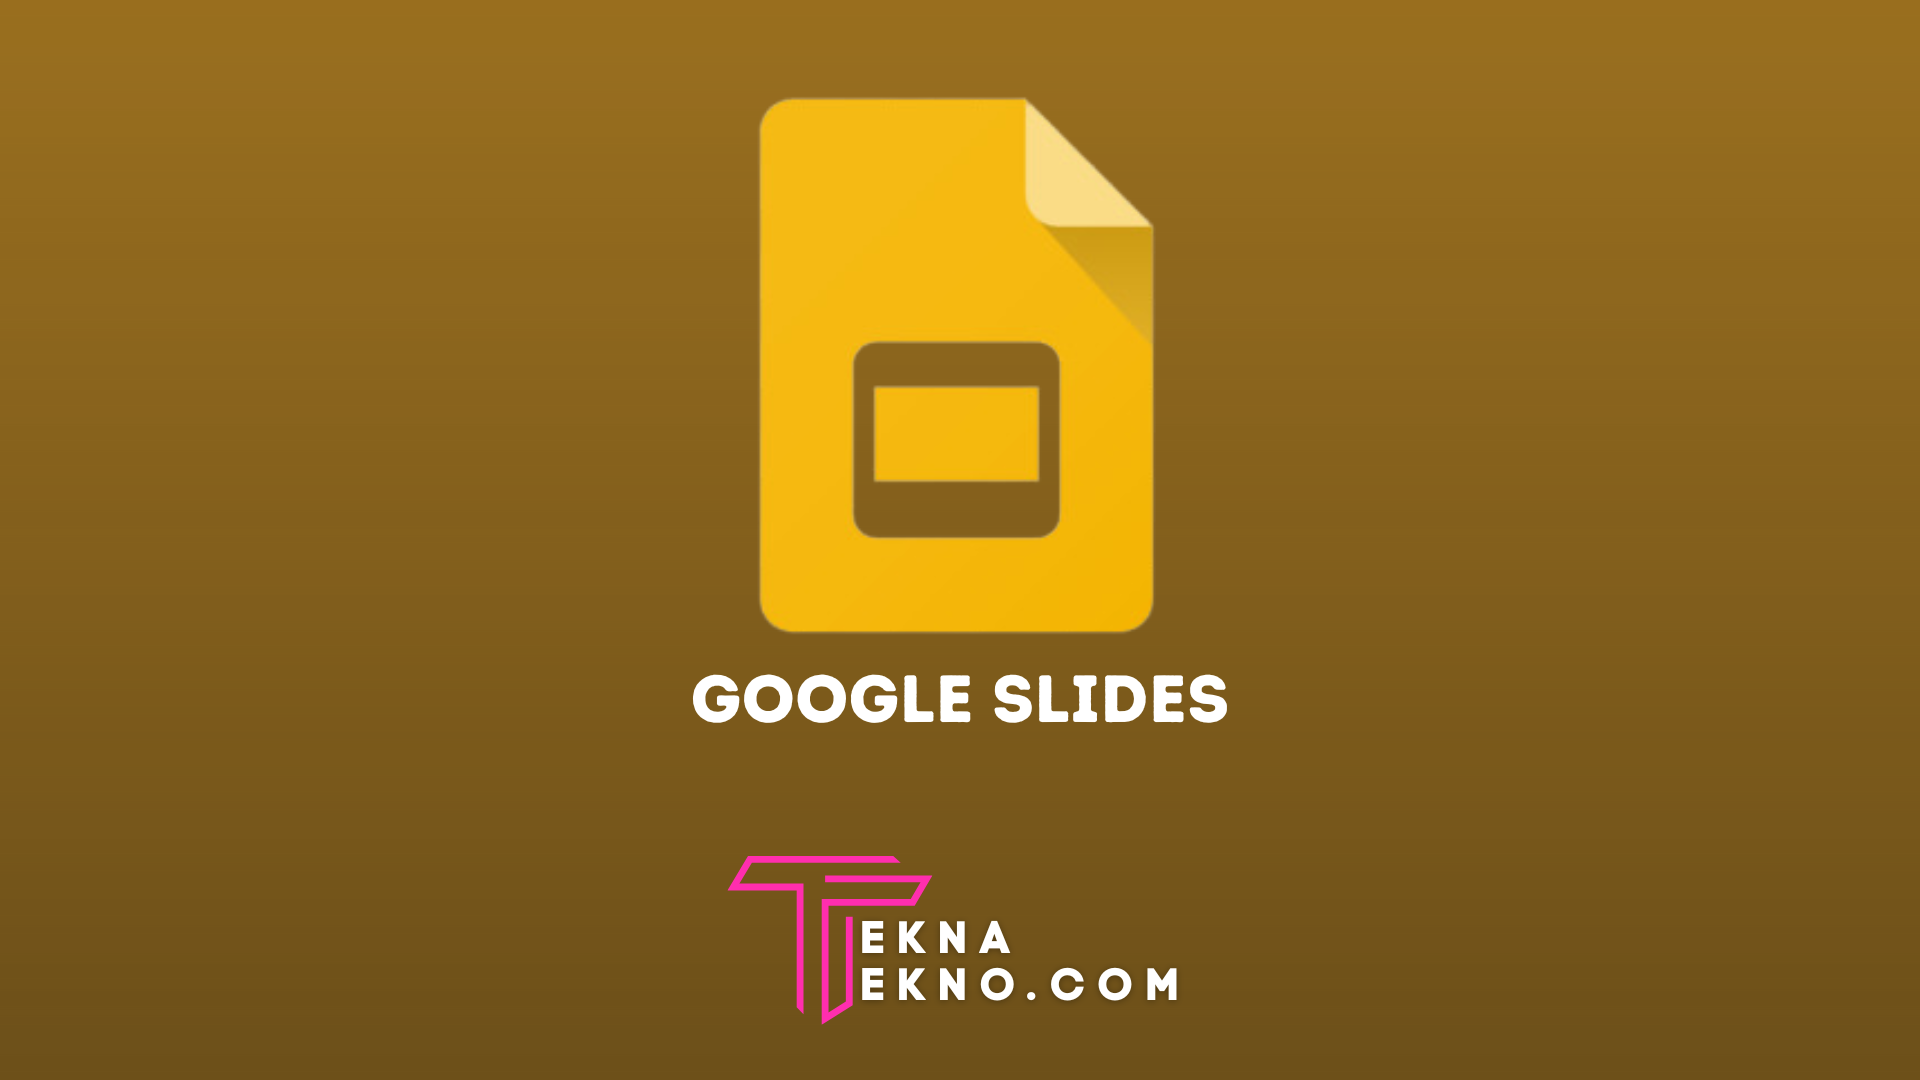 Google Slides Adalah: Pengertian, Fungsi, Fitur dan Cara Menggunakannya